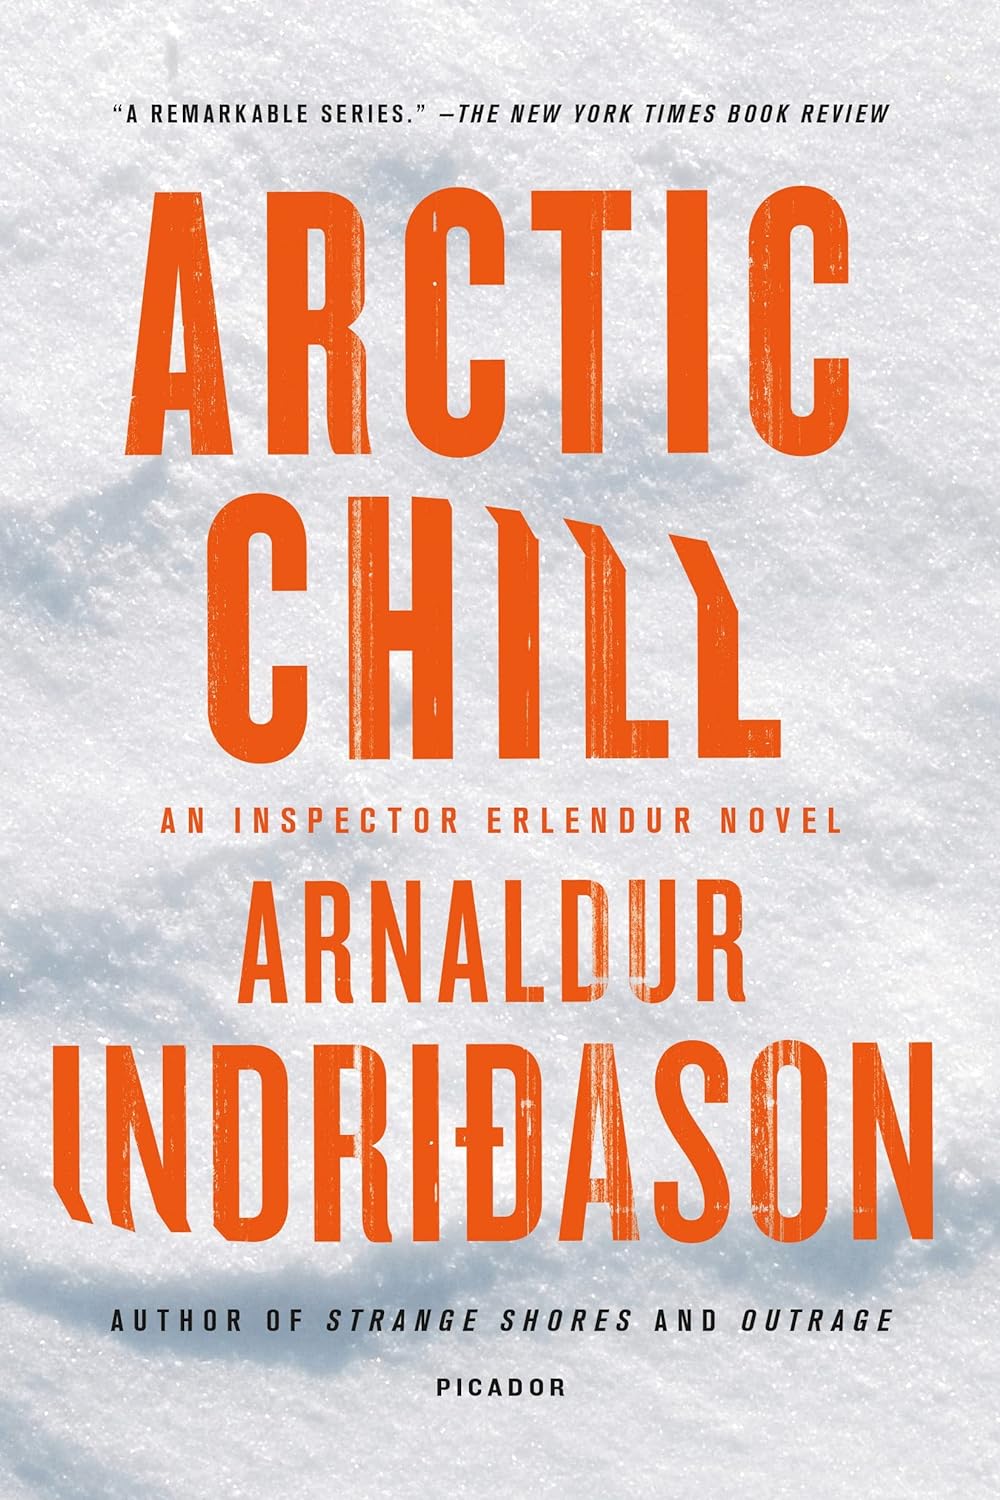 Arctic Chill: An Inspector Erlendur Novel by Arnaldur Indridason (Author), Bernard Scudder (Translat